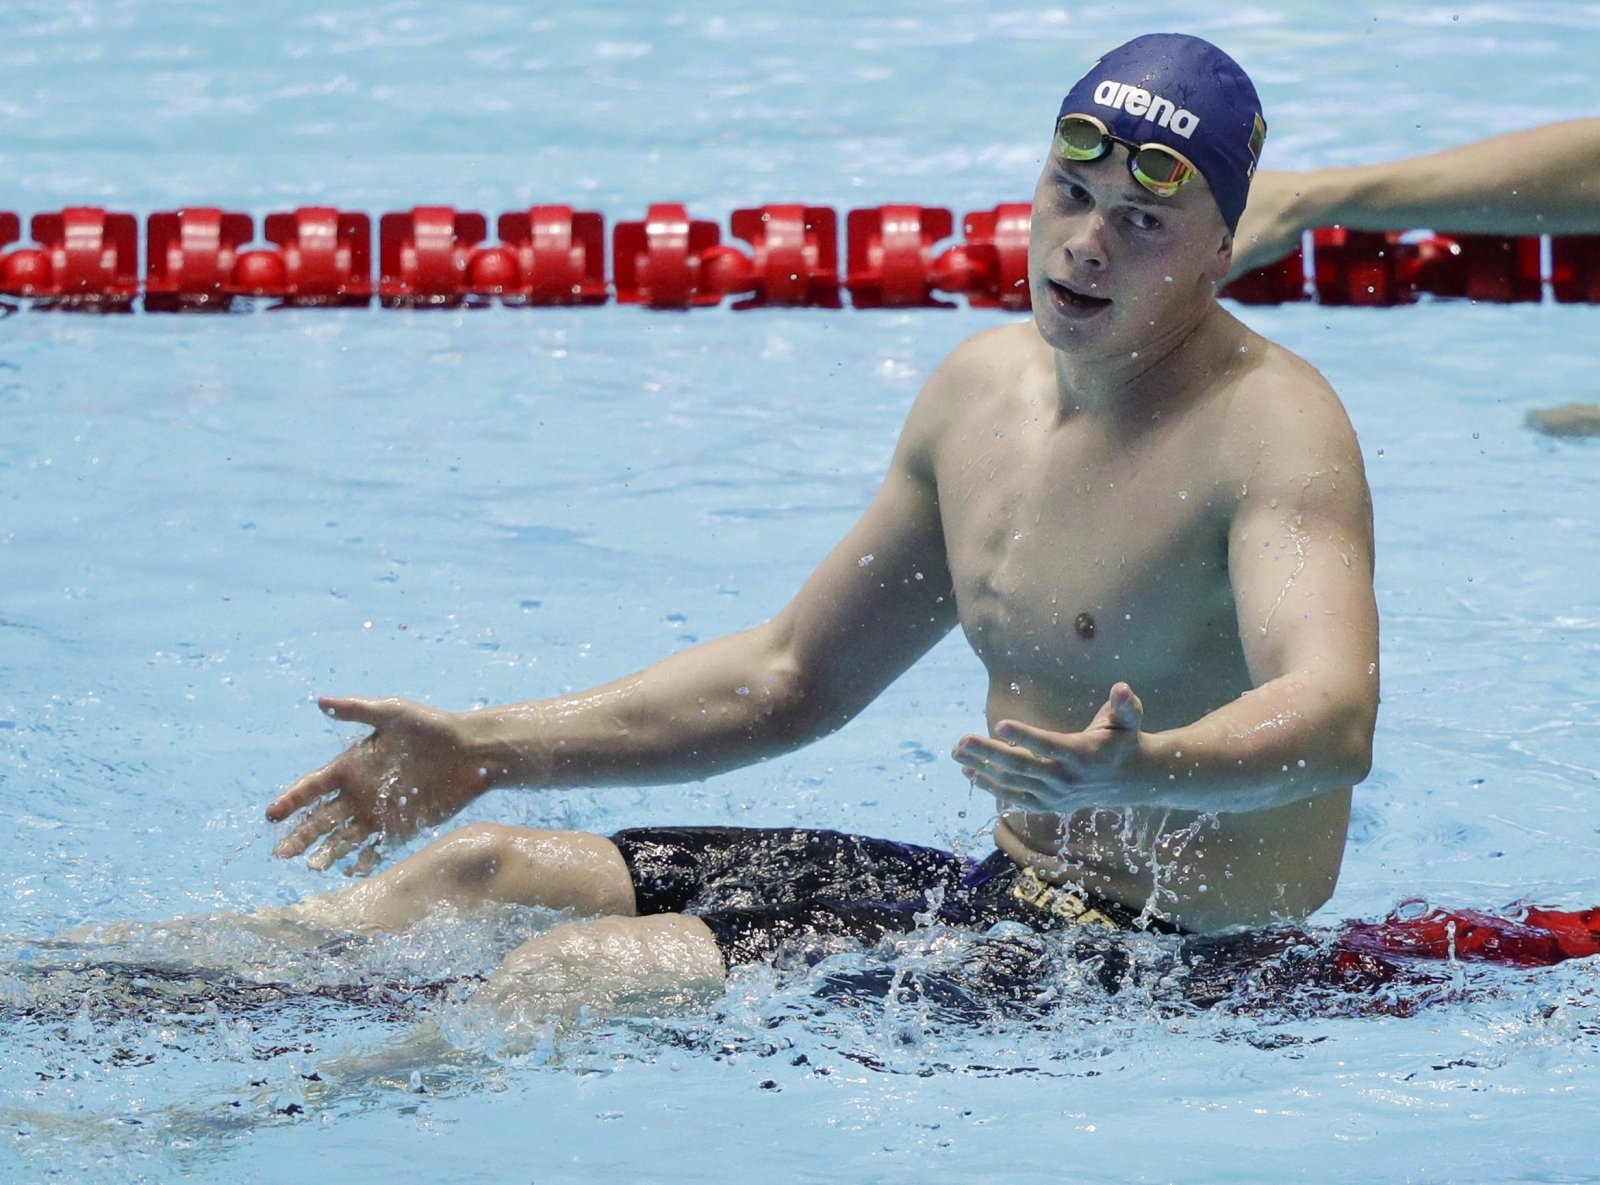 Pietų Korėjoje vykstančiame planetos plaukimo čempionate 200 m plaukimo laisvu stiliumi rungties finale panevėžietis Danas Rapšys finišavo pirmas, tačiau teisėjų sprendimu jis buvo diskvalifikuotas.